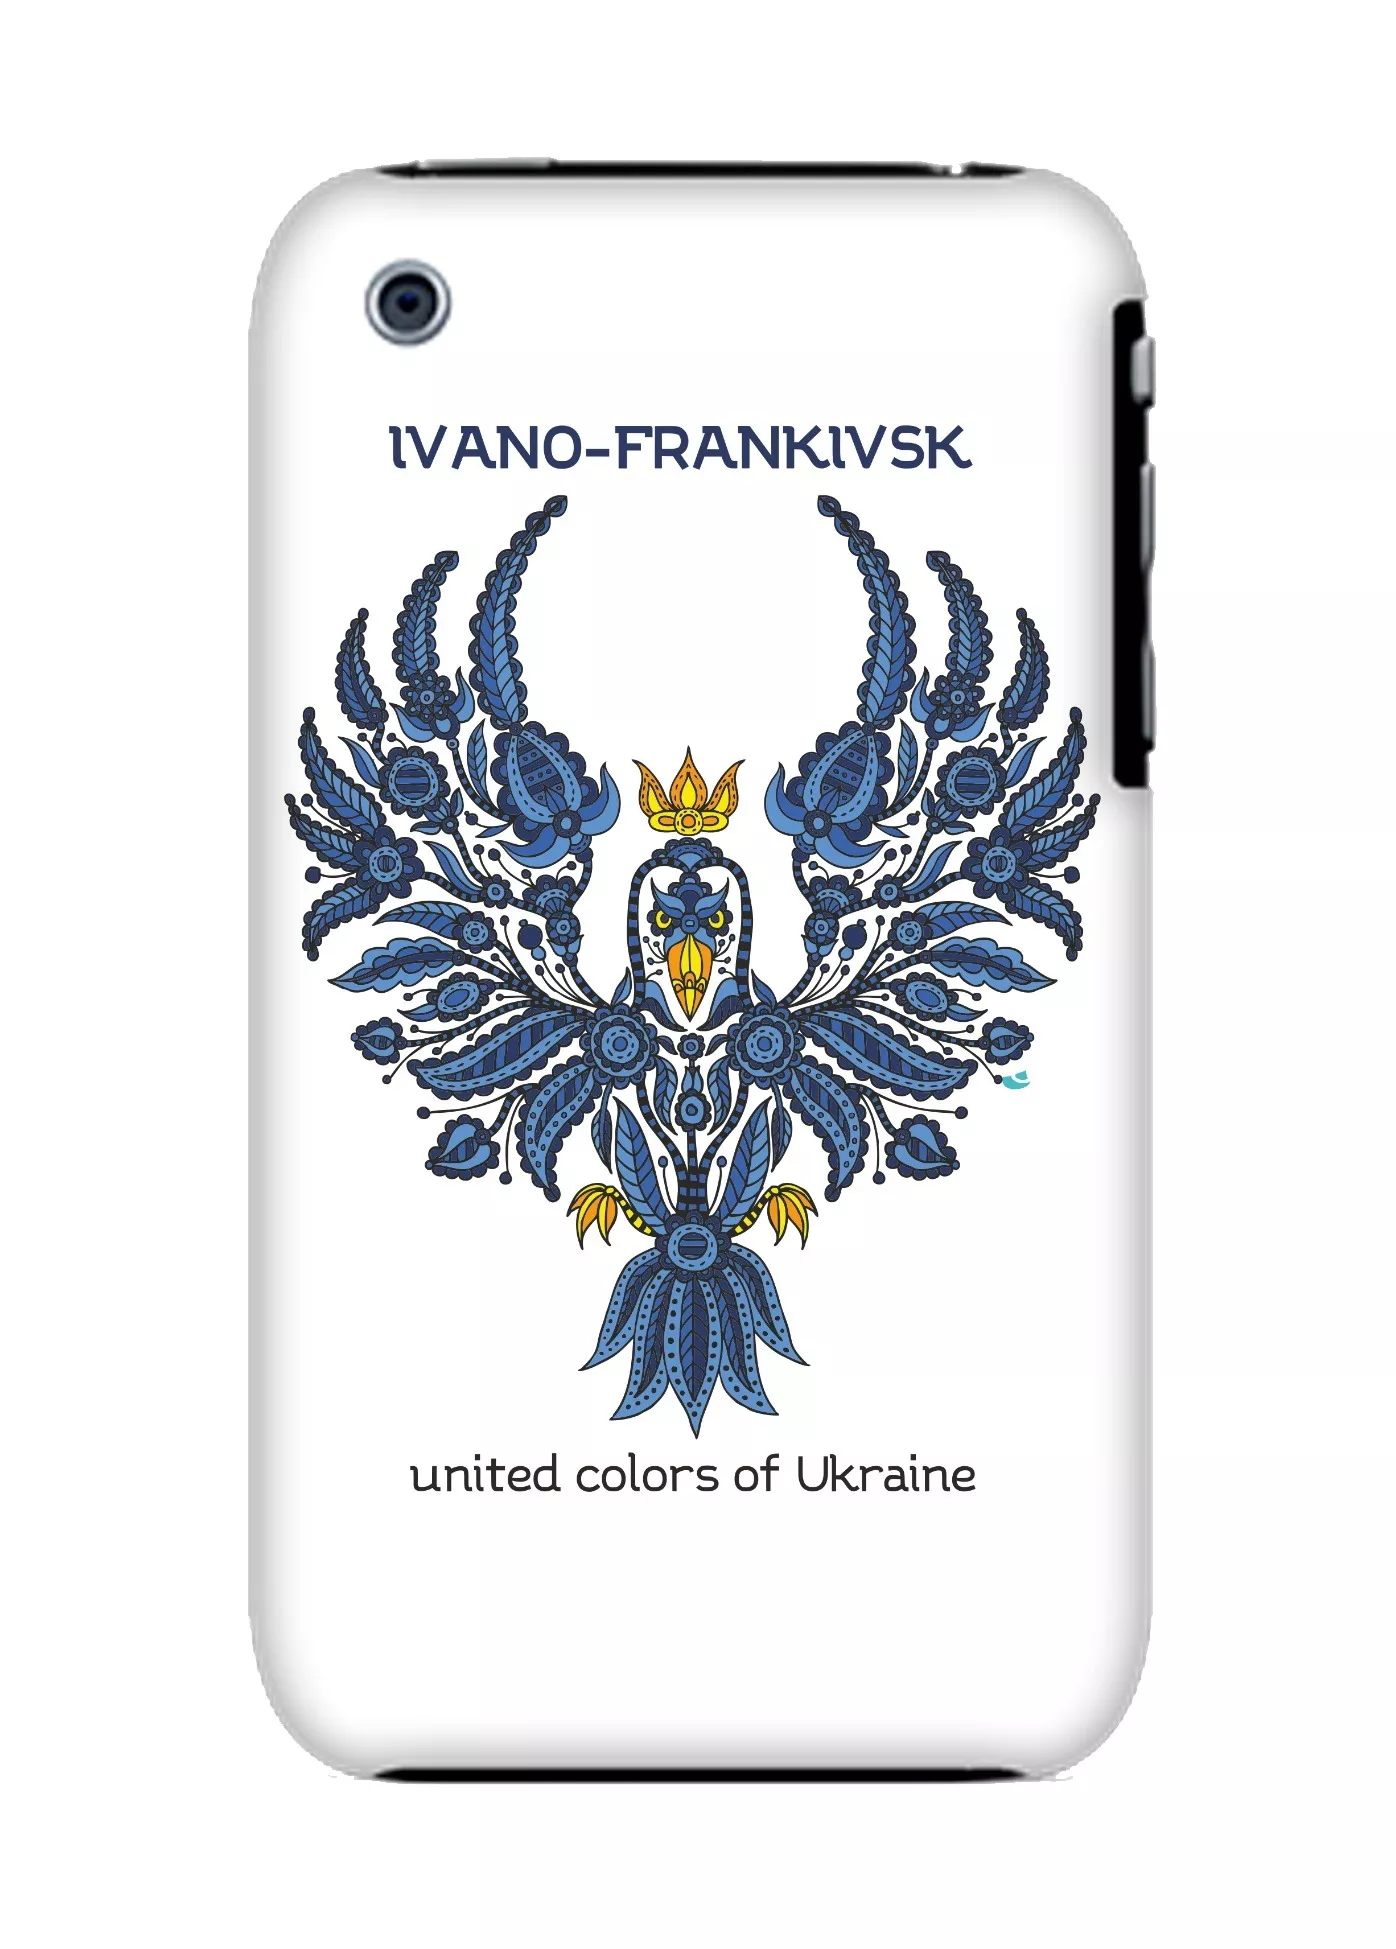 Чехол для iPhone 3Gs с символом Ивано-франковска от Chapaev Street